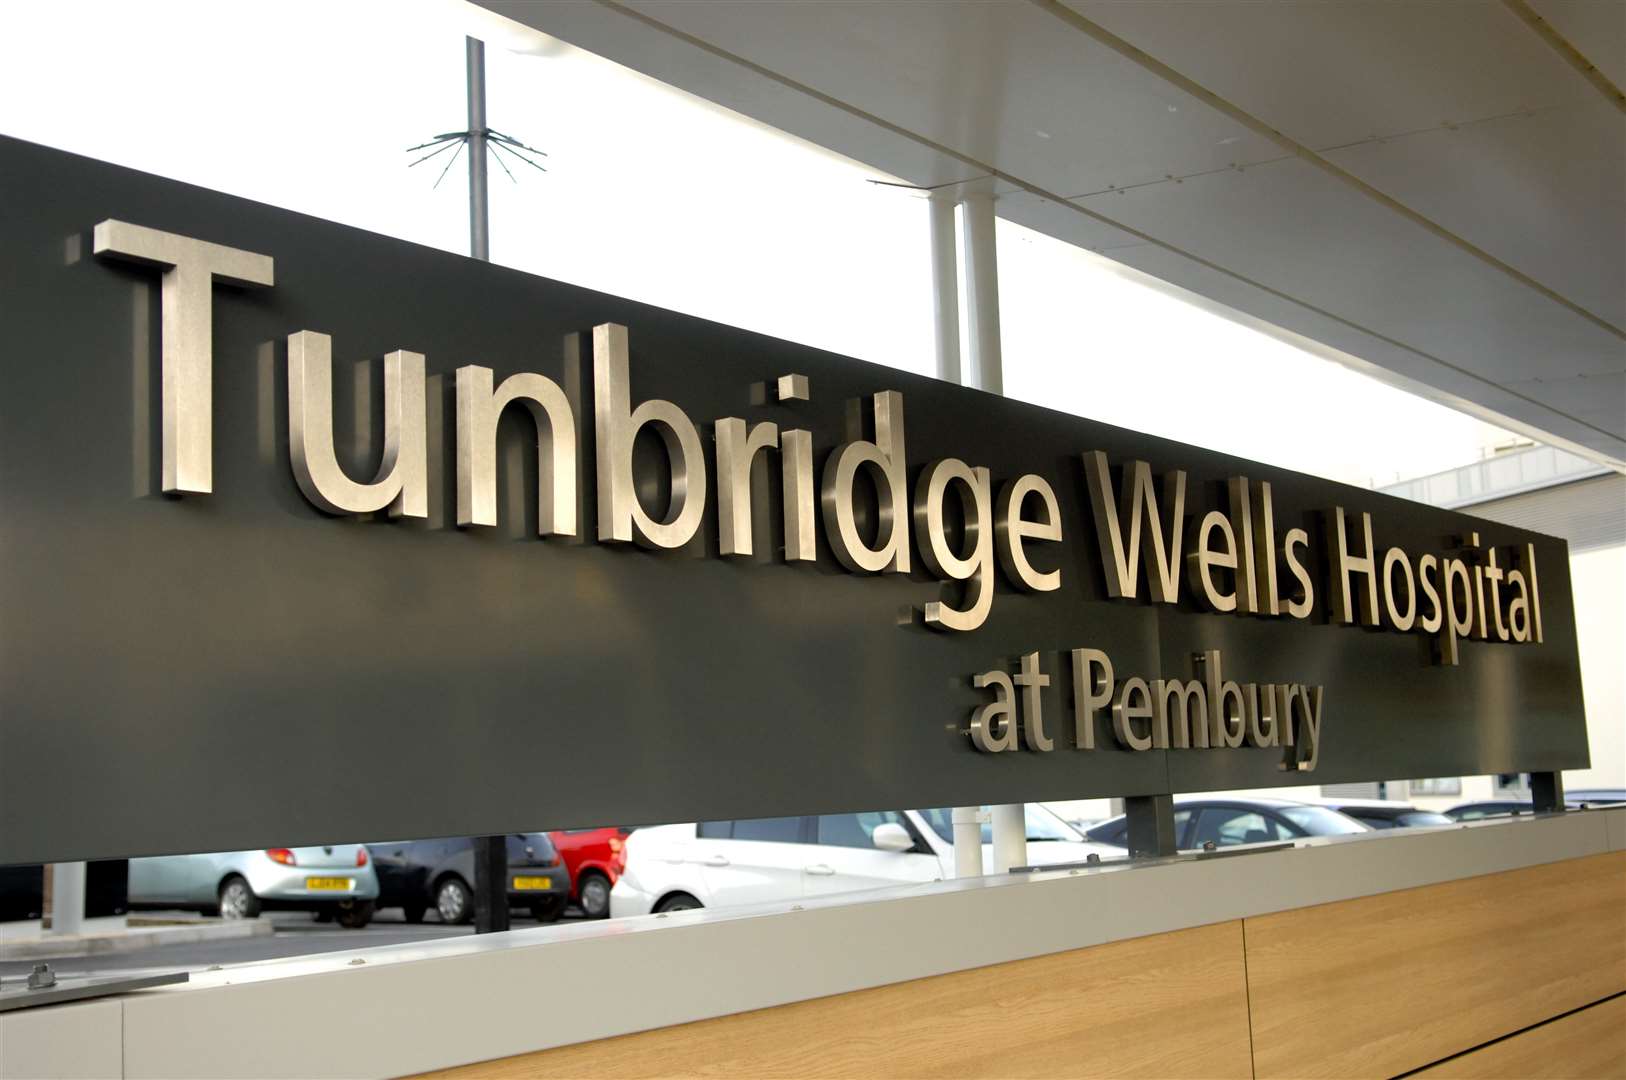 Mrs Price was taken to Tunbridge Wells Hospital at Pembury